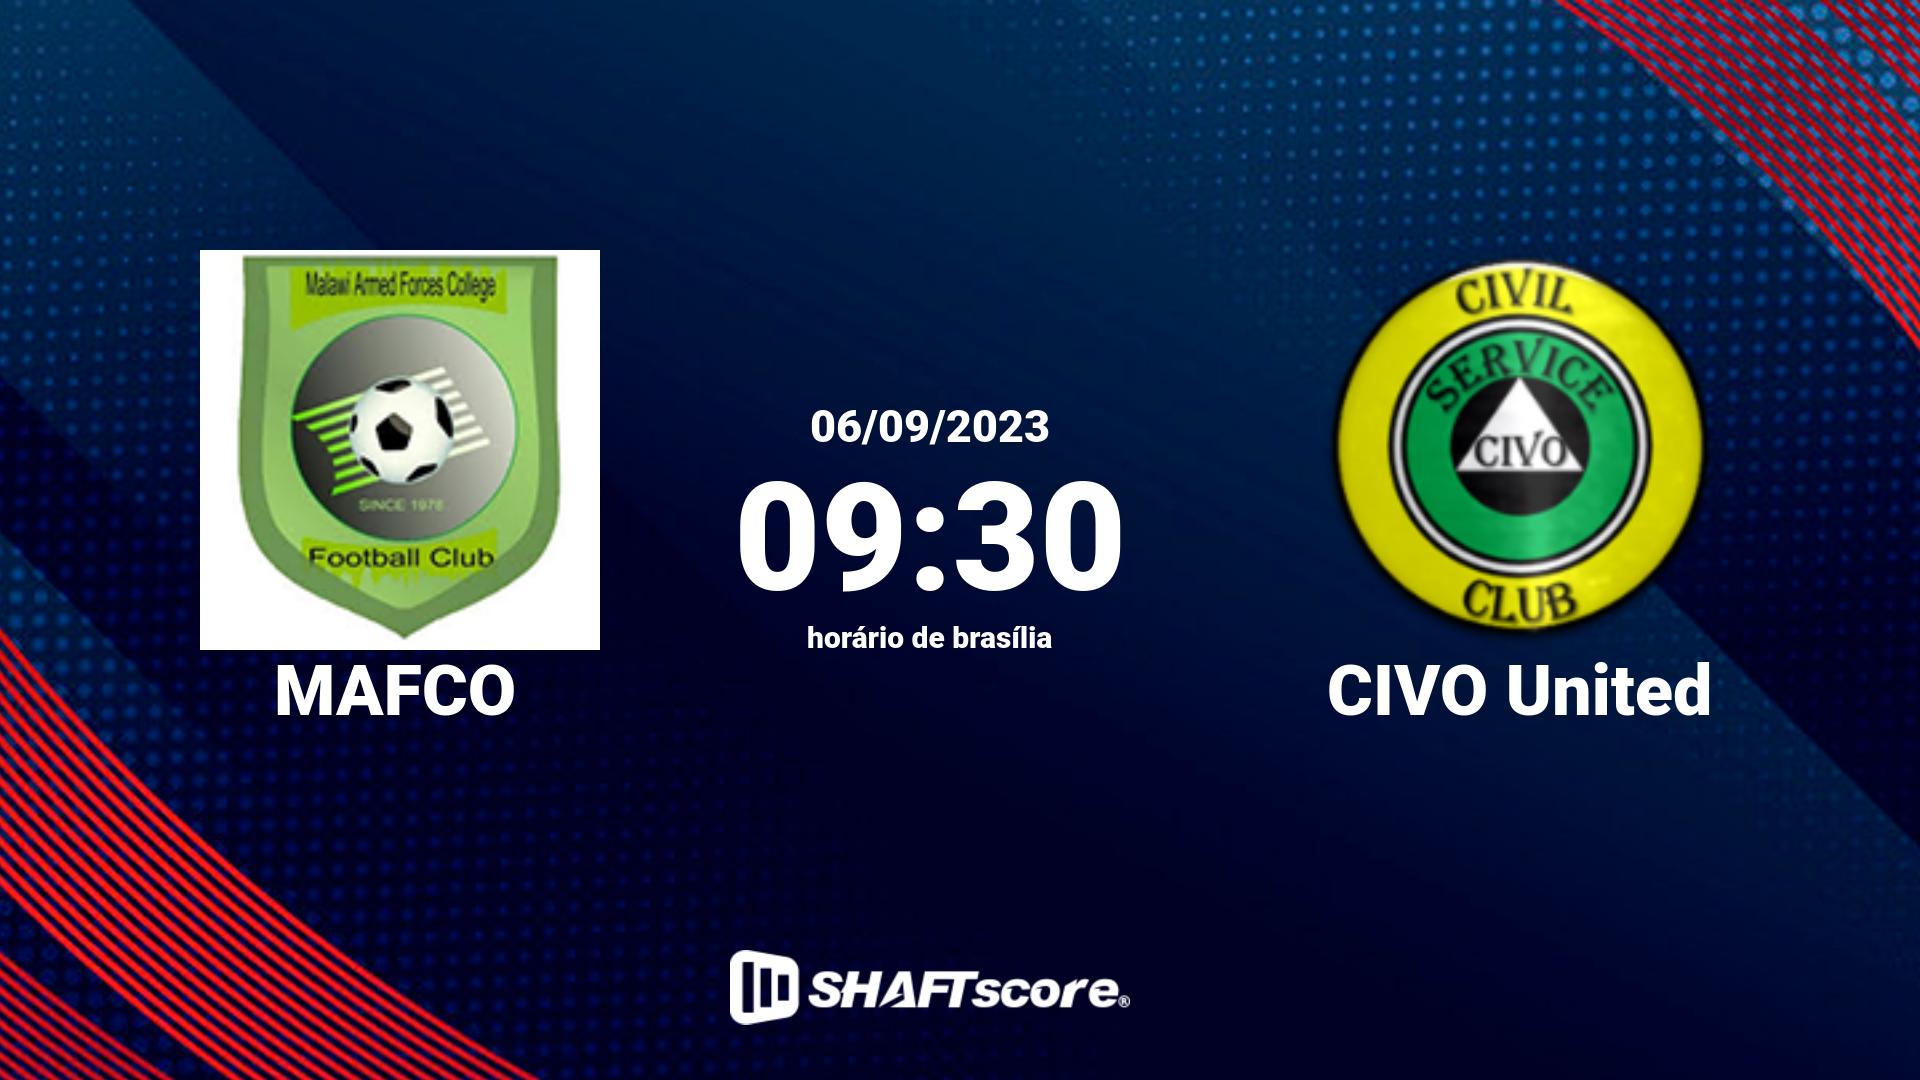 Estatísticas do jogo MAFCO vs CIVO United 06.09 09:30